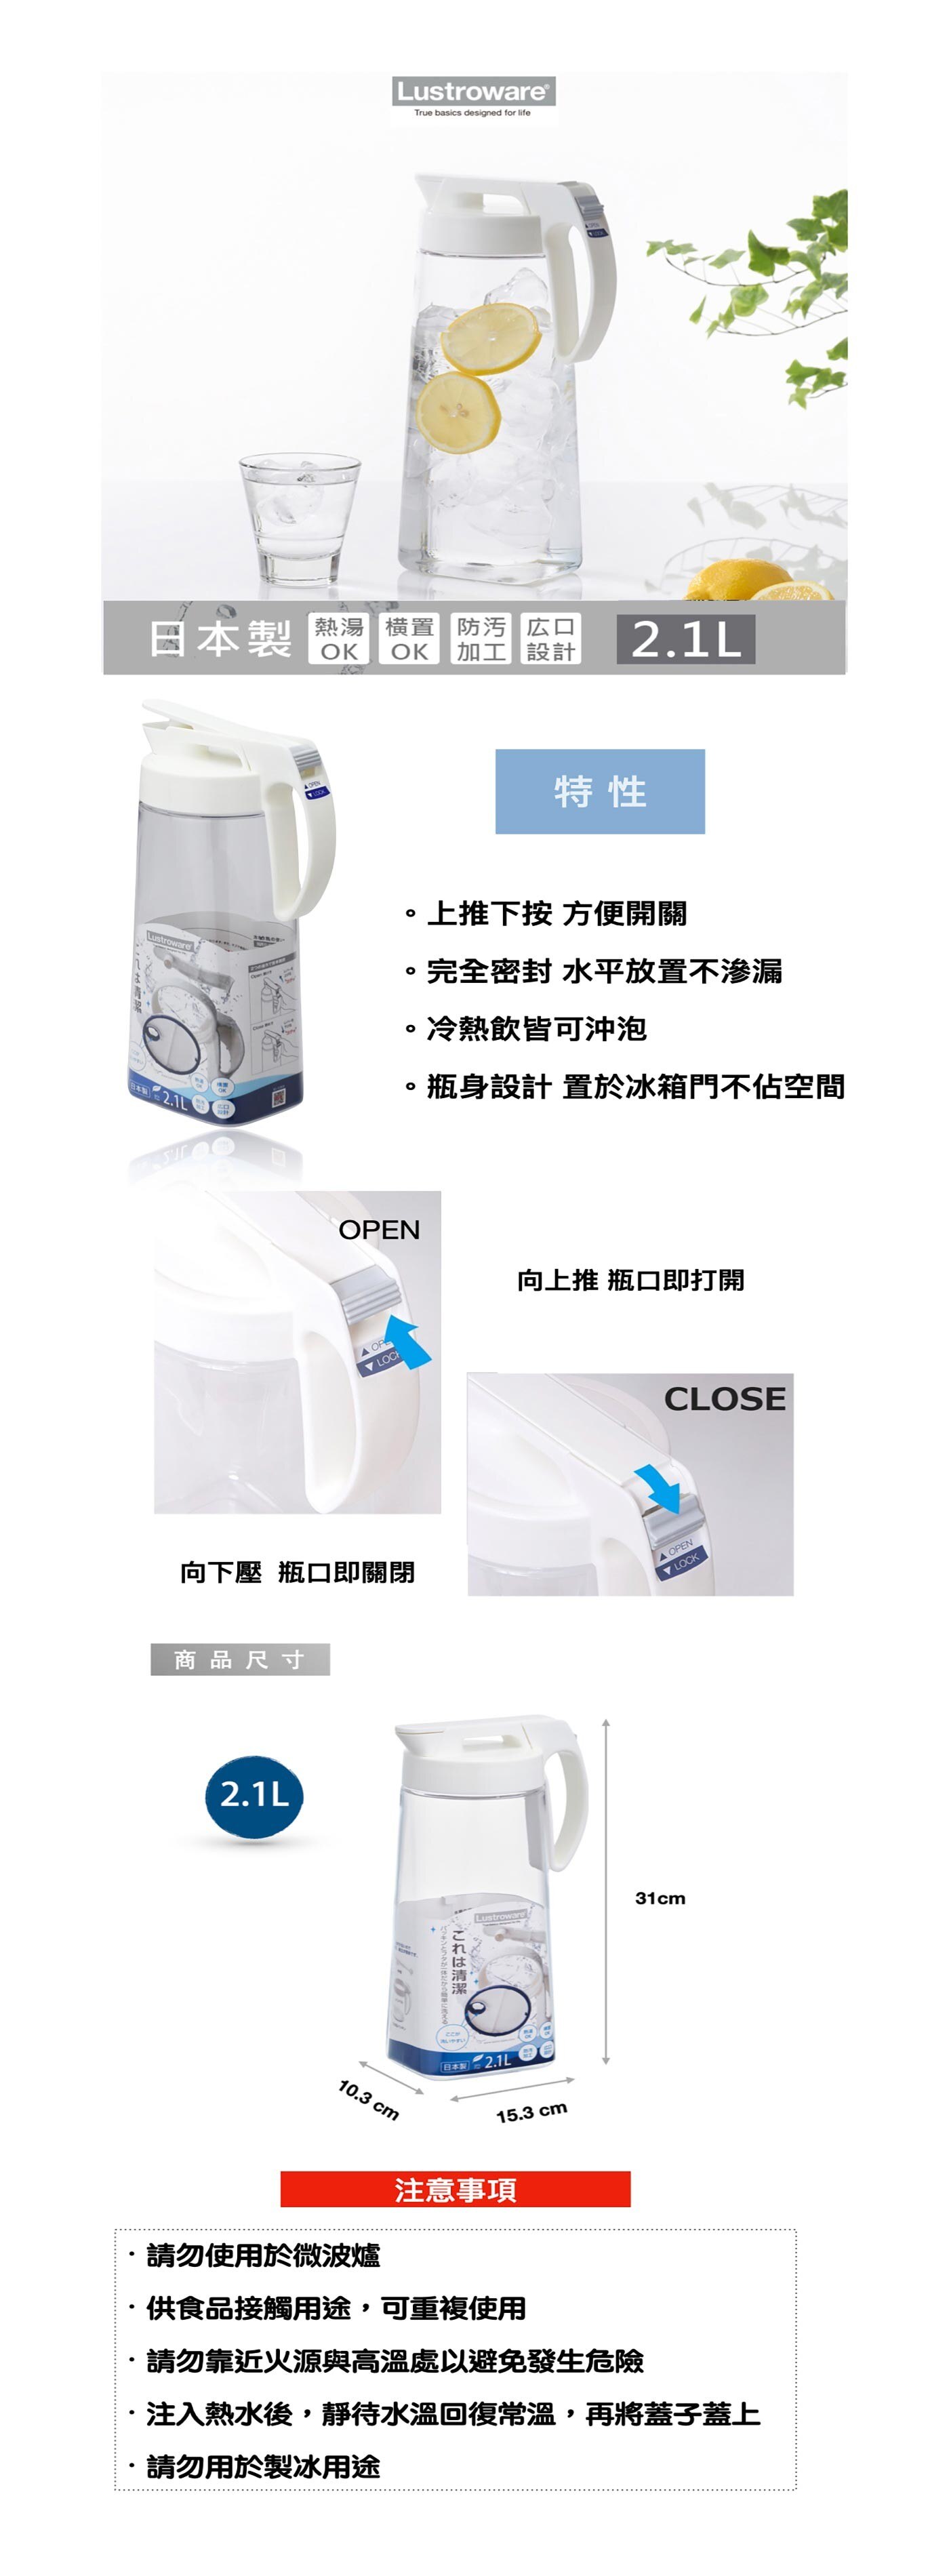 Lustroware 2.1公升冷水壺，日本製造進口，可單手輕鬆使用，密封防漏可橫放，可耐熱100度，一壺兩用，冷、熱水不受限。